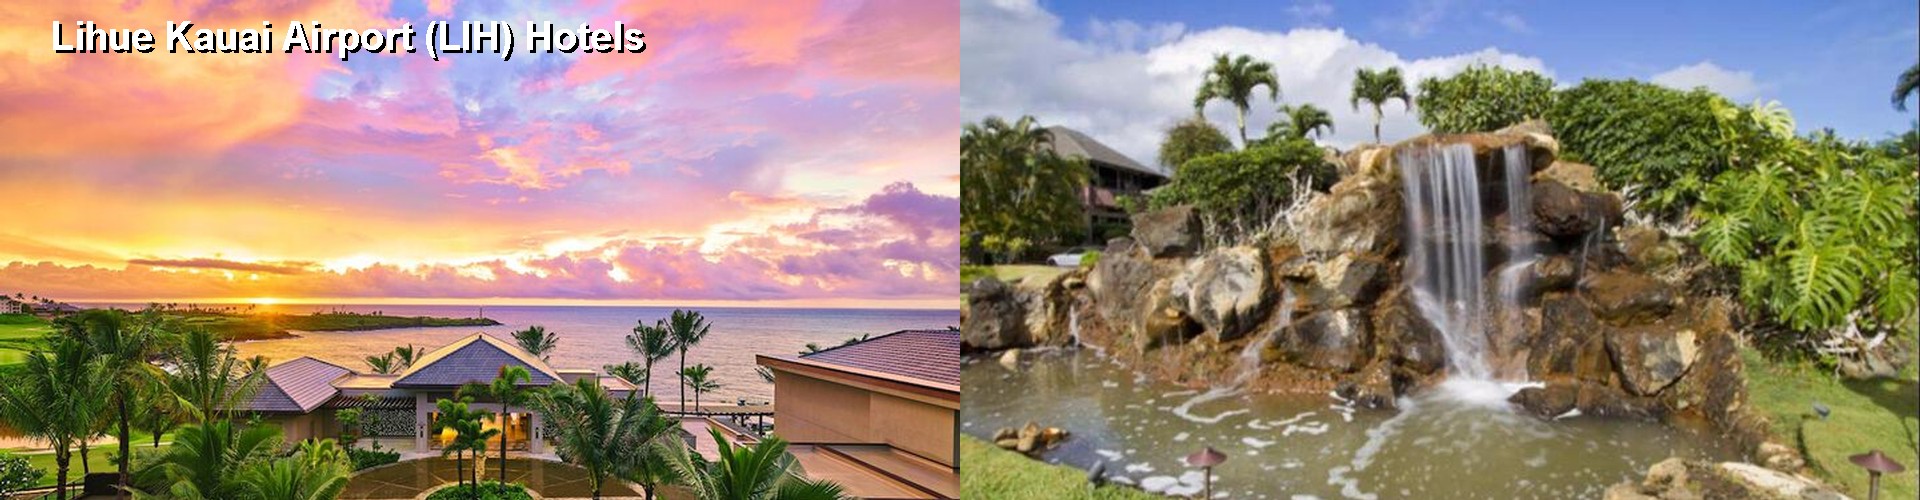 5 Best Hotels near Lihue Kauai Airport (LIH)